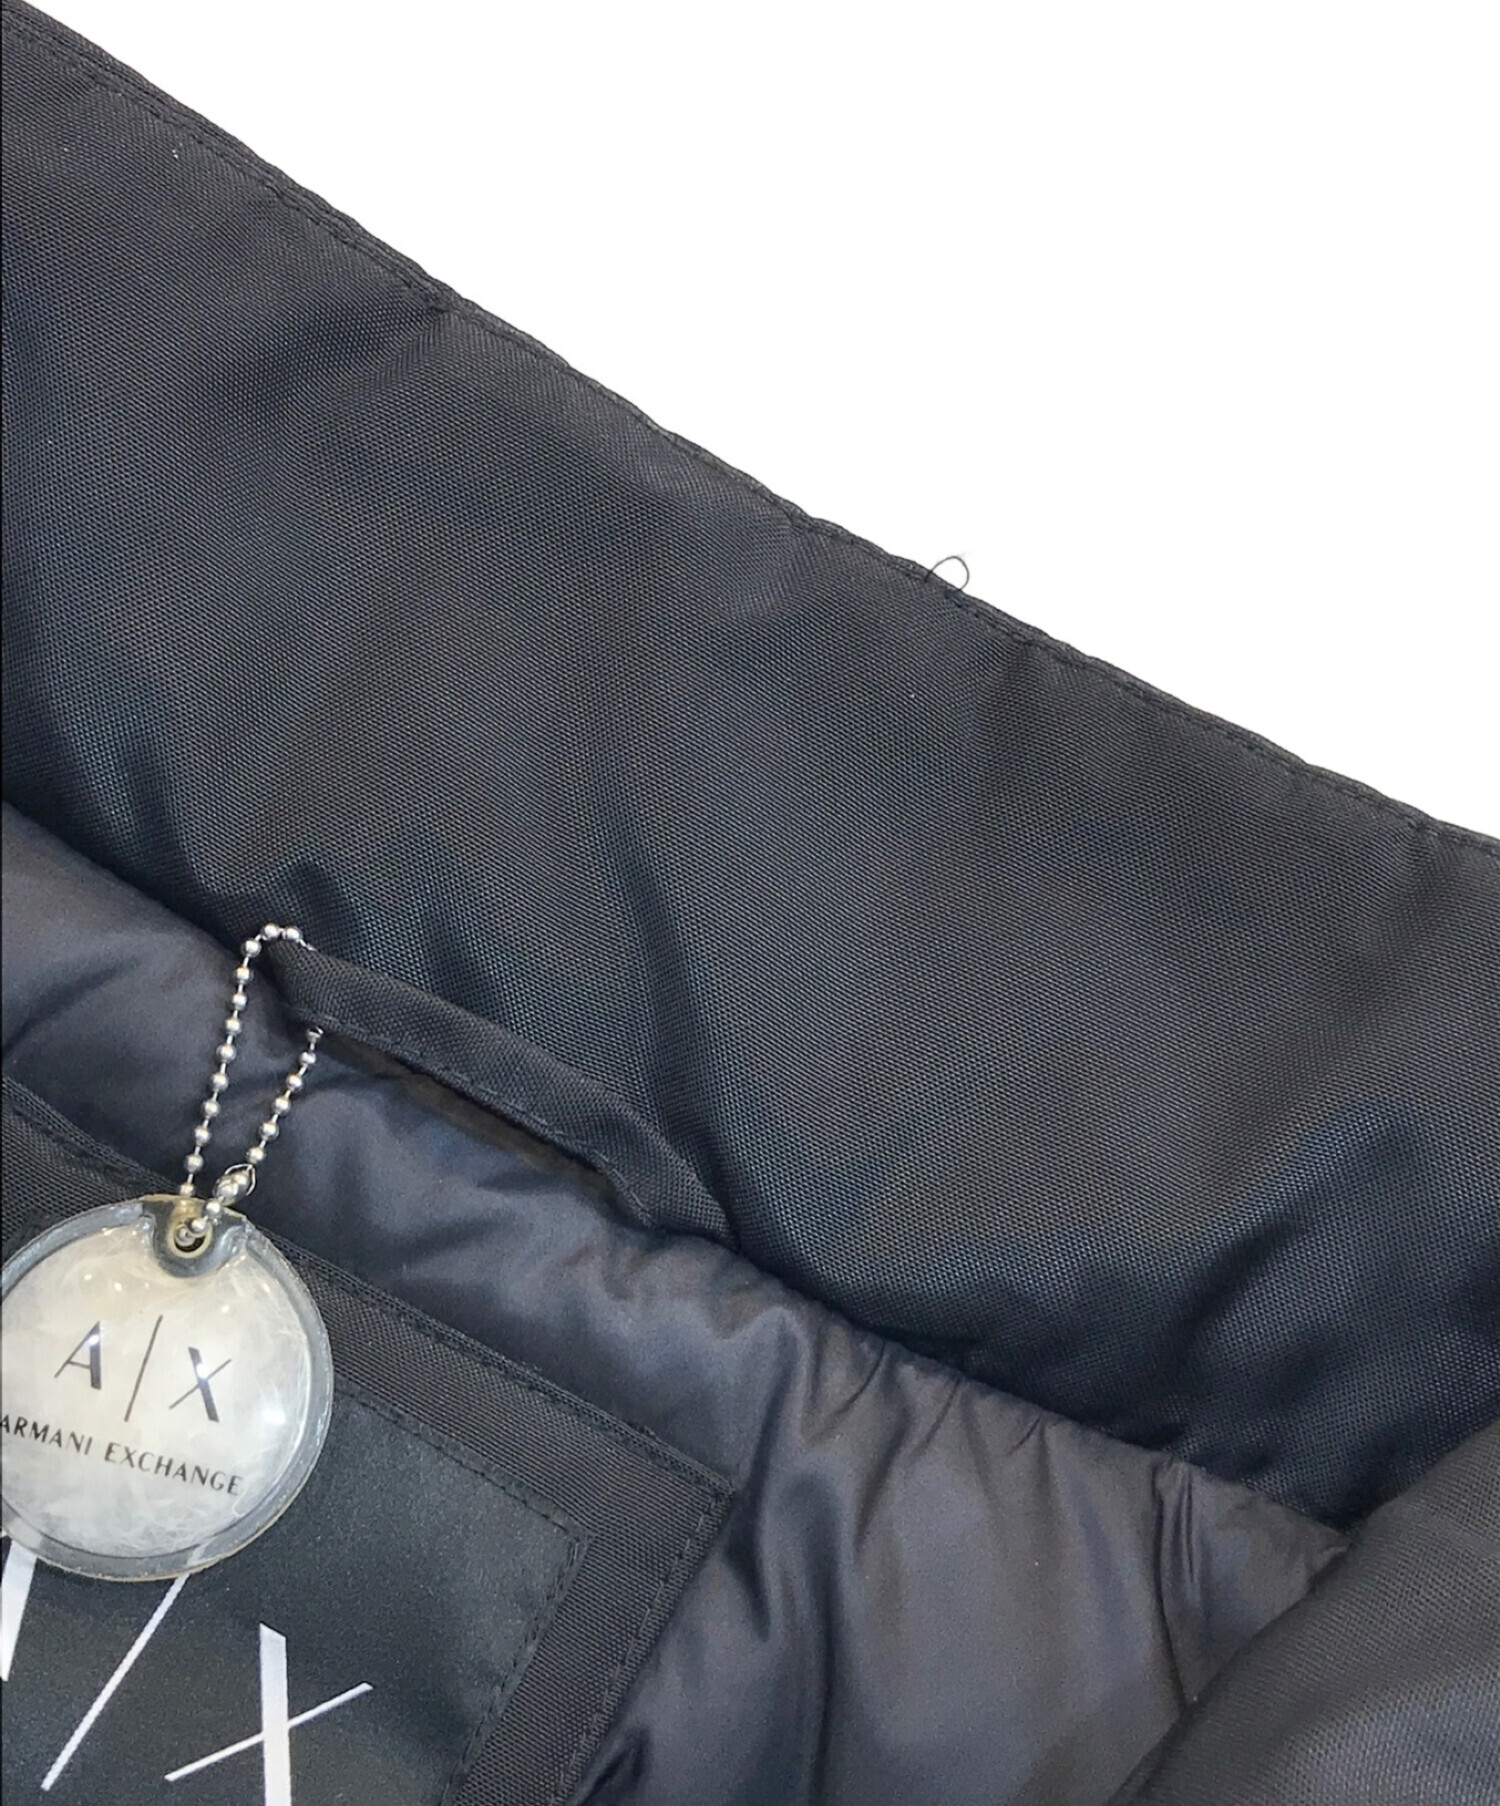 ARMANI EXCHANGE (アルマーニ エクスチェンジ) ダウンジャケット ブラック サイズ:M